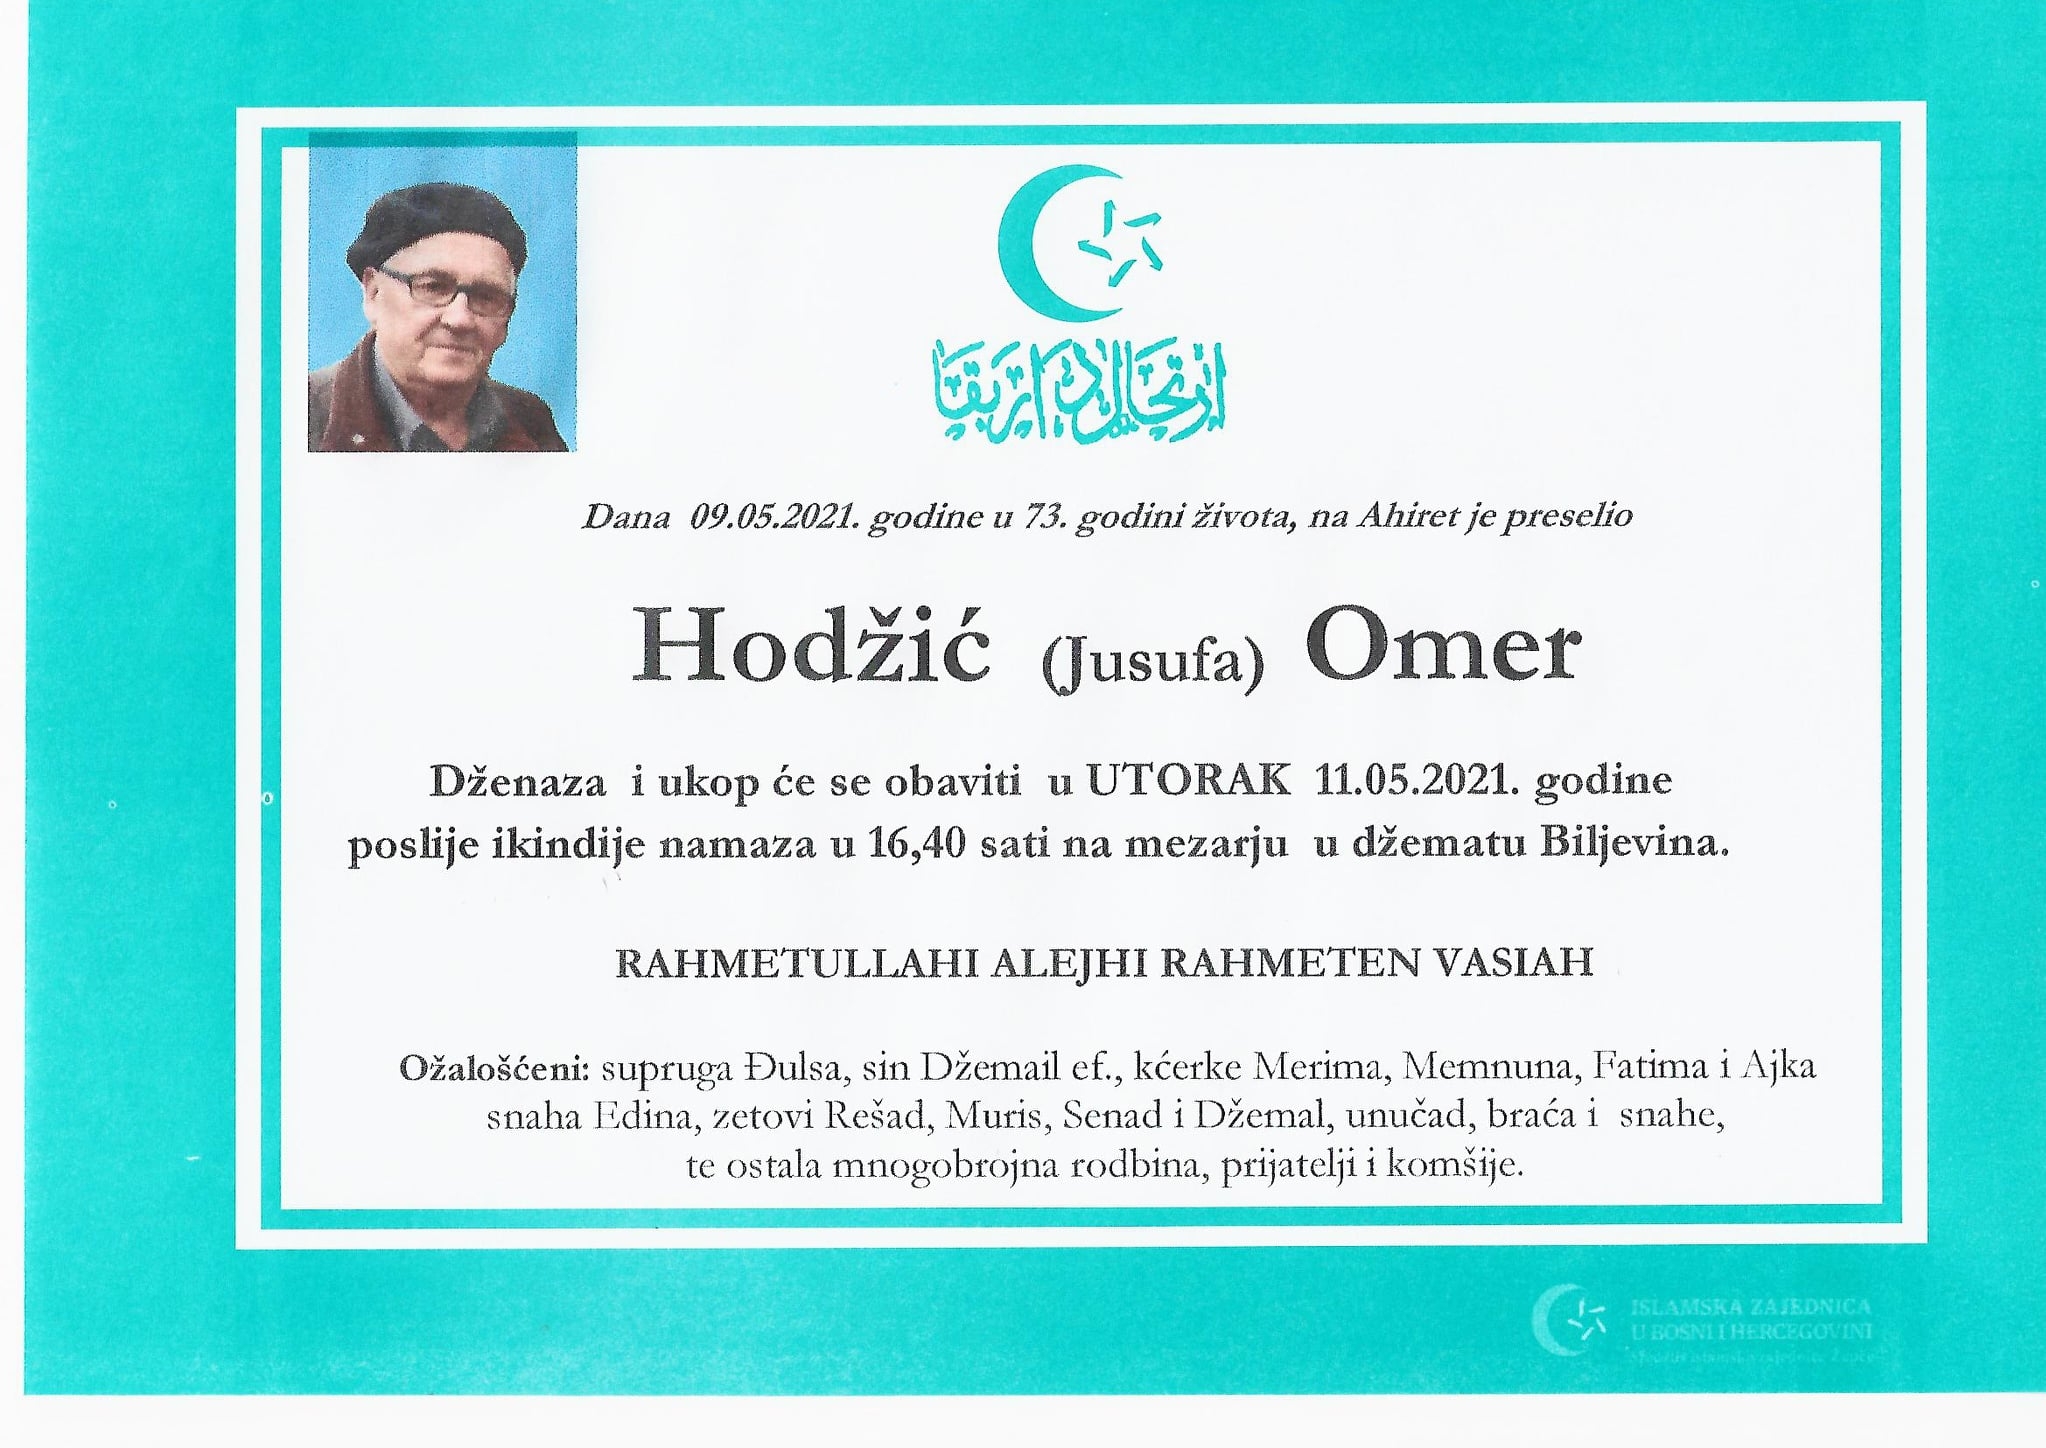 Dženaza – Omer Hodžić